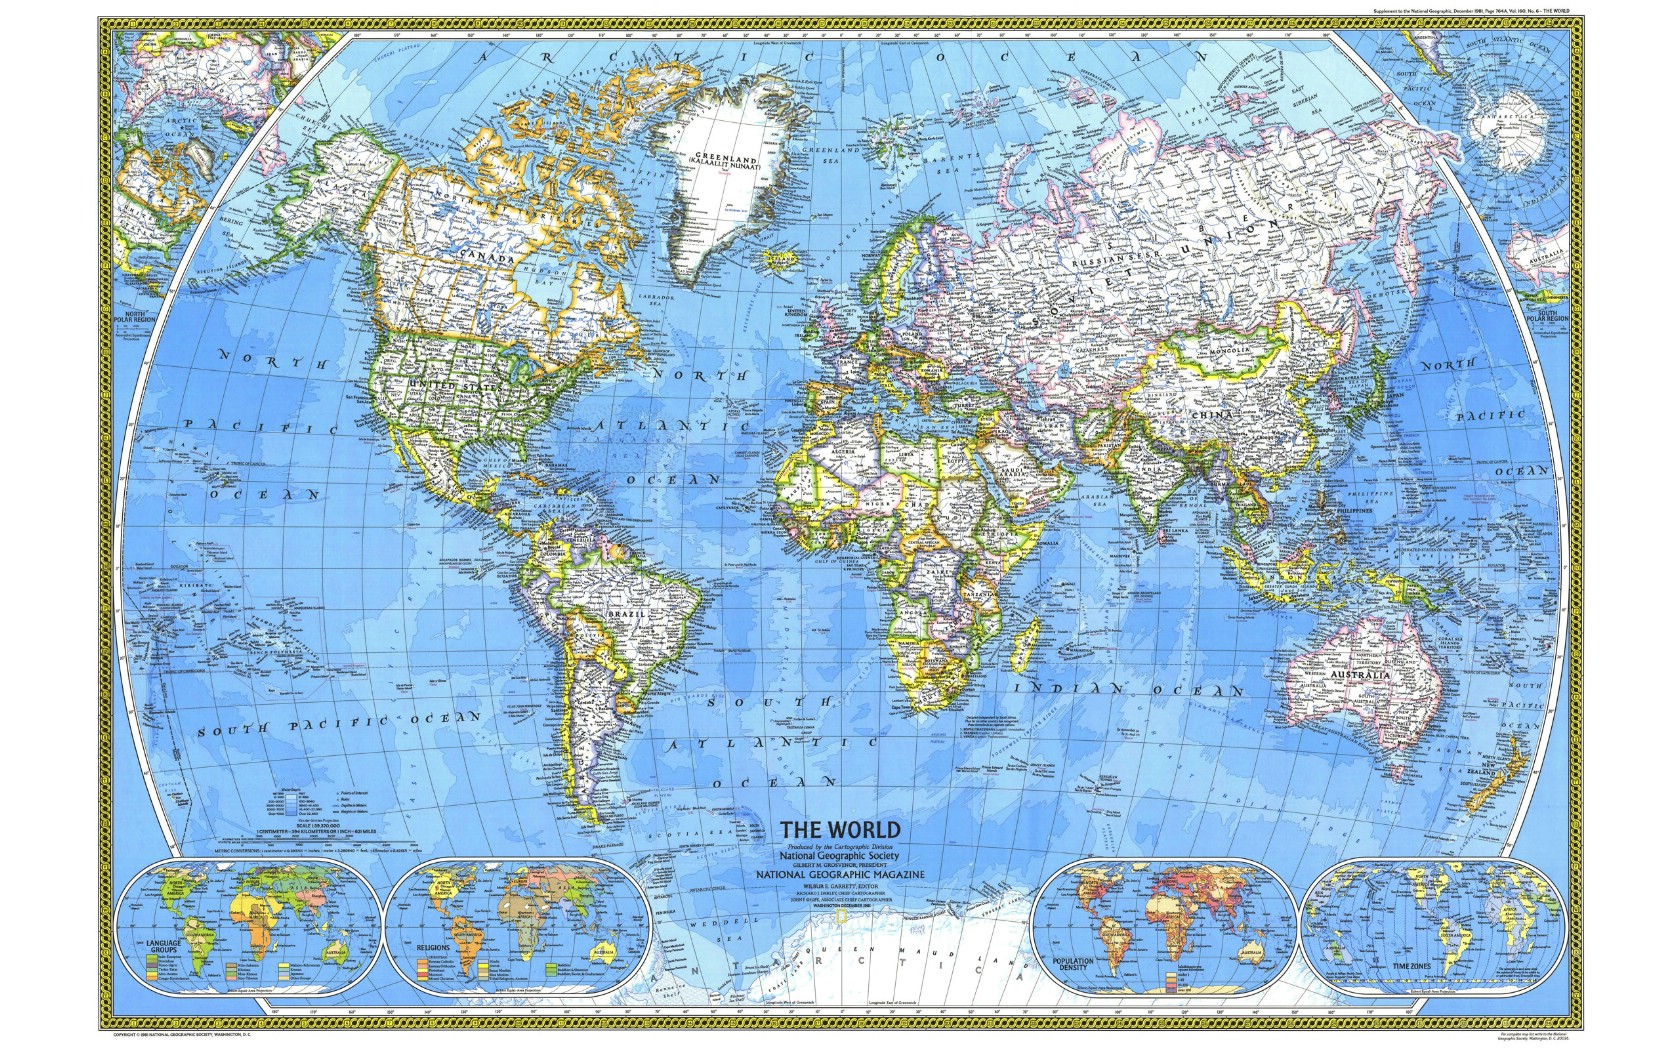 壁纸1680x1050超大世界地图 1 9壁纸 未归类 超大世界地图 第一辑壁纸 未归类 超大世界地图 第一辑图片 未归类 超大世界地图 第一辑素材 其他壁纸 其他图库 其他图片素材桌面壁纸